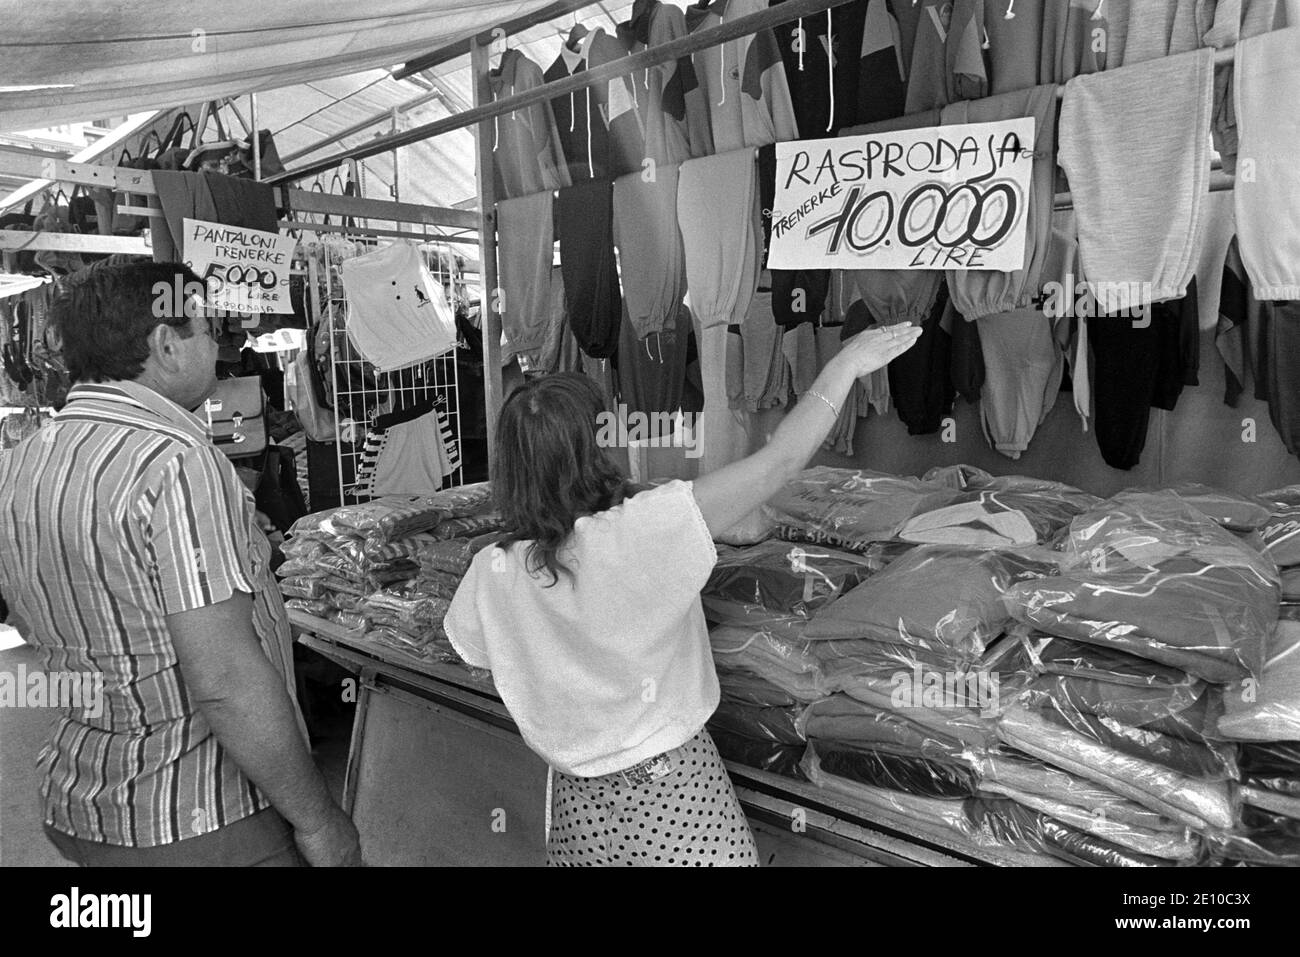 - Trieste, marché en plein air fréquenté par les citoyens yougoslaves traversant la frontière à la recherche de vêtements occidentaux (juillet 1989) - Trieste, mercato all'aperto frequento da cittadini yougoslavi che atraversano la frontiera in cerca di capi di abbigliamento occidentali (Luglio 1989) Banque D'Images